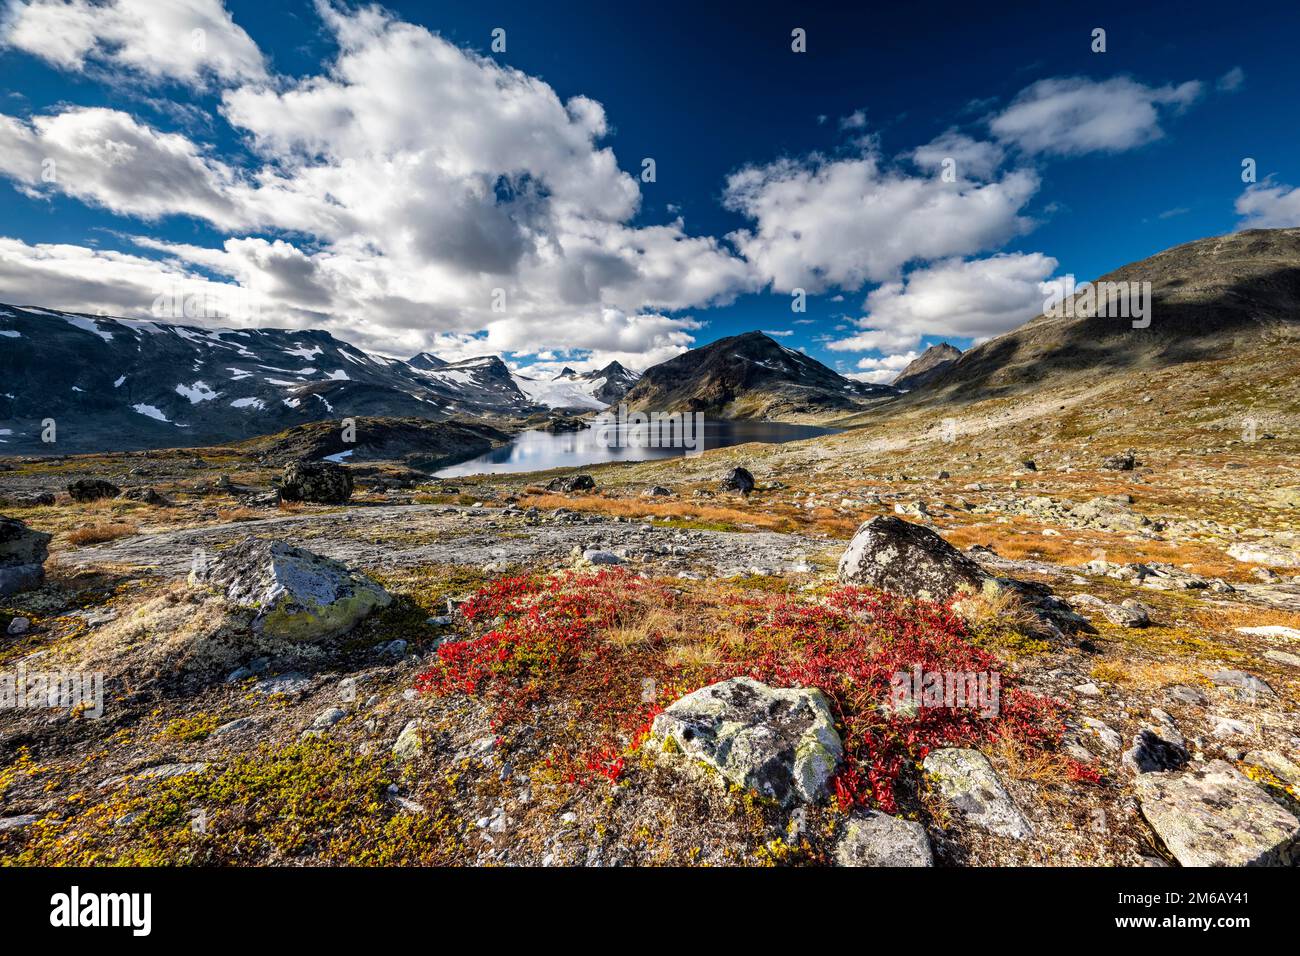 Paysage de montagne dans le parc national de Jotunheimen, lac Store Mjolkedalsvatnet avec glacier Mjolkedalsbreen, Norvège Banque D'Images